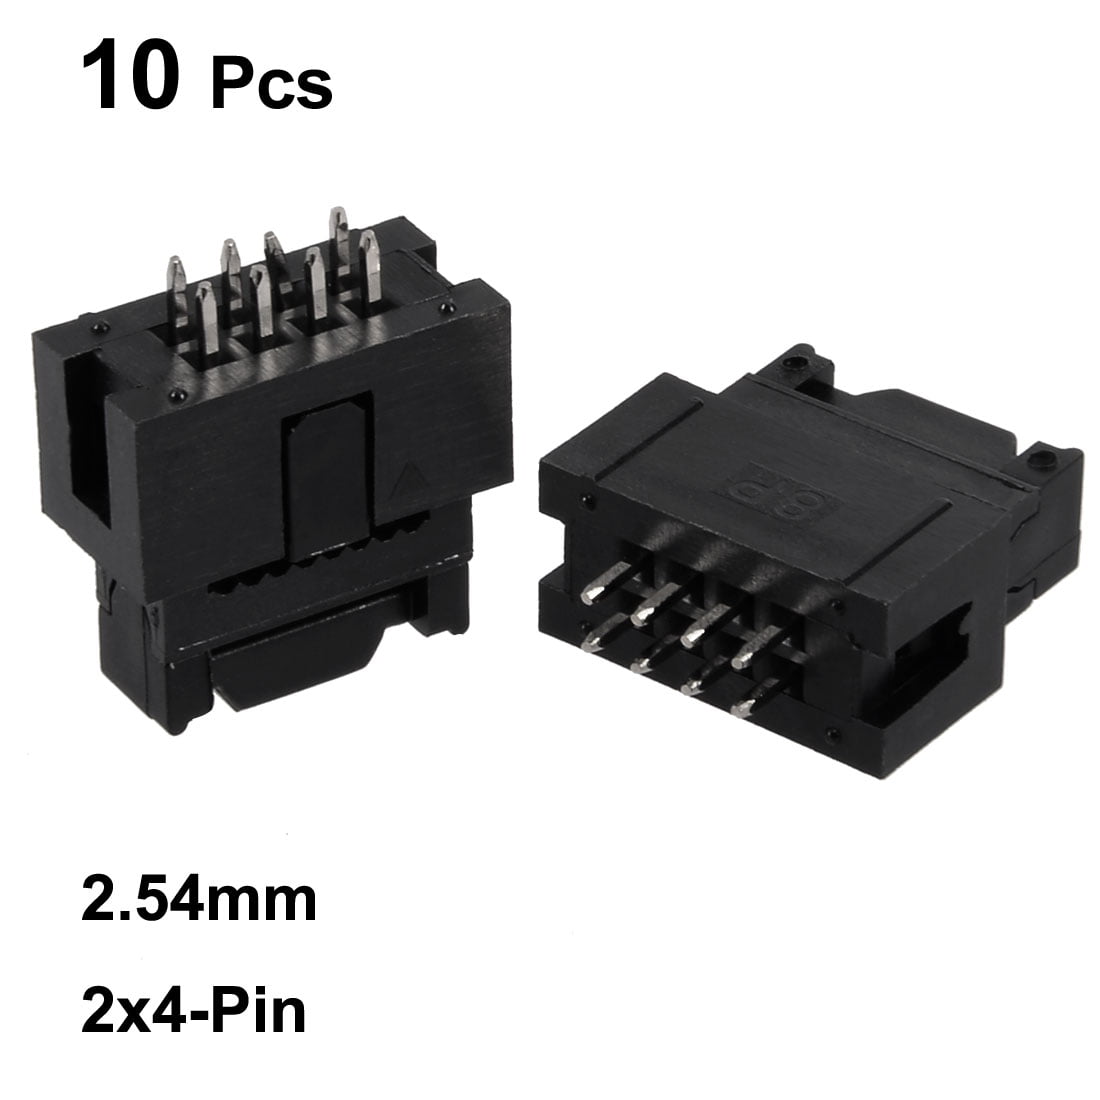 10 PCS Socket Strip/Header 2x4 Pin/8 Pin 2.54mm Twin Pitch Socket 